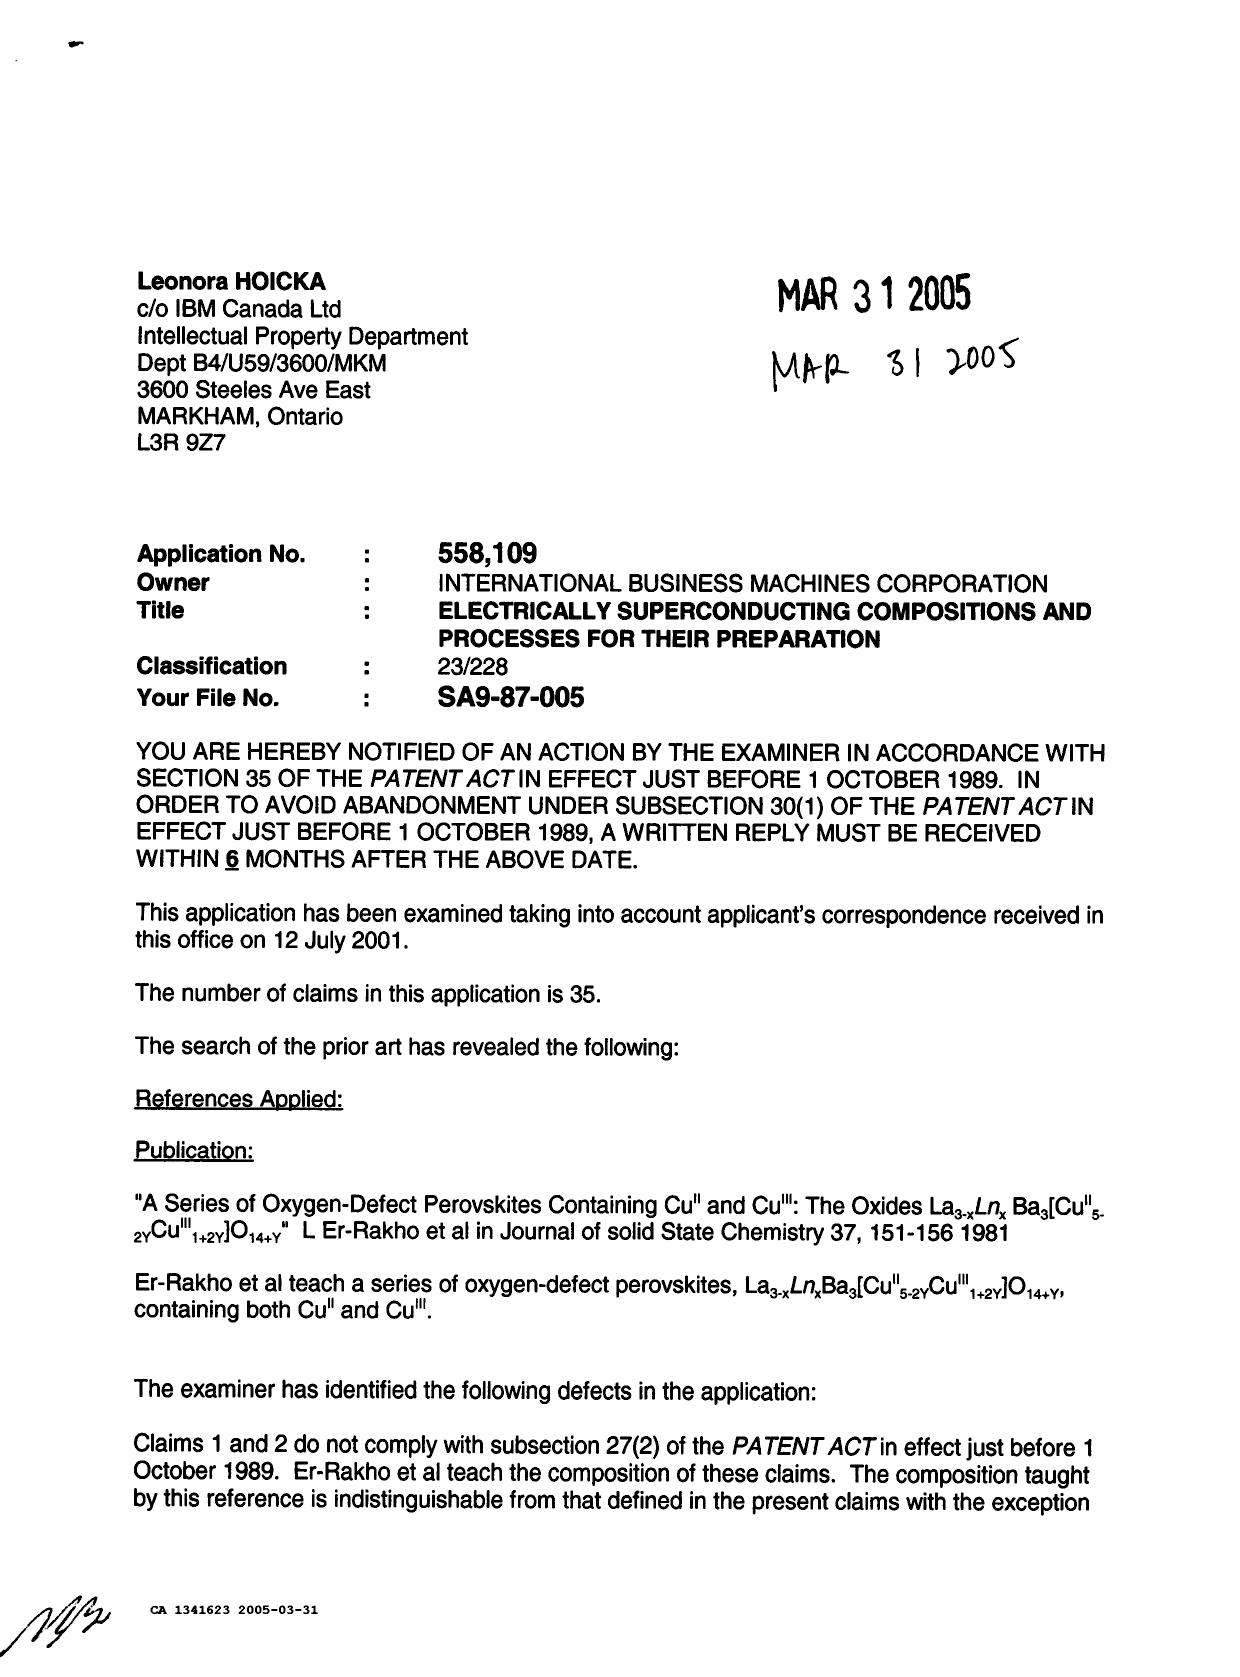 Document de brevet canadien 1341623. Demande d'examen 20050331. Image 1 de 3